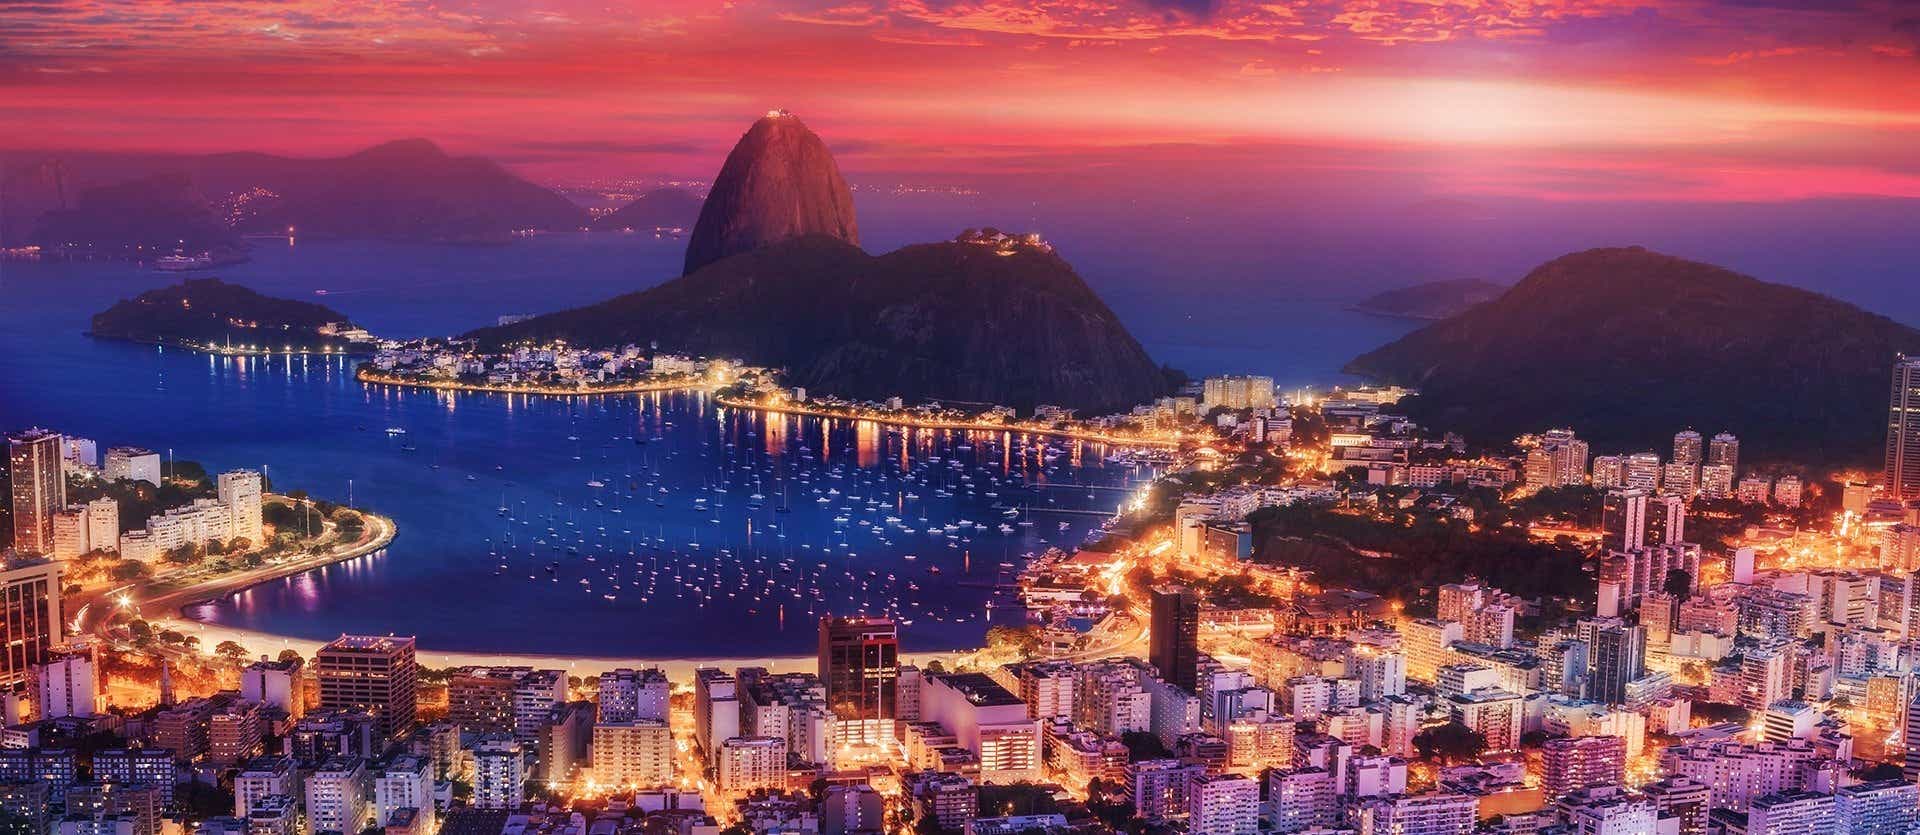 Rio de Janeiro <span class="iconos separador"></span> Brasil